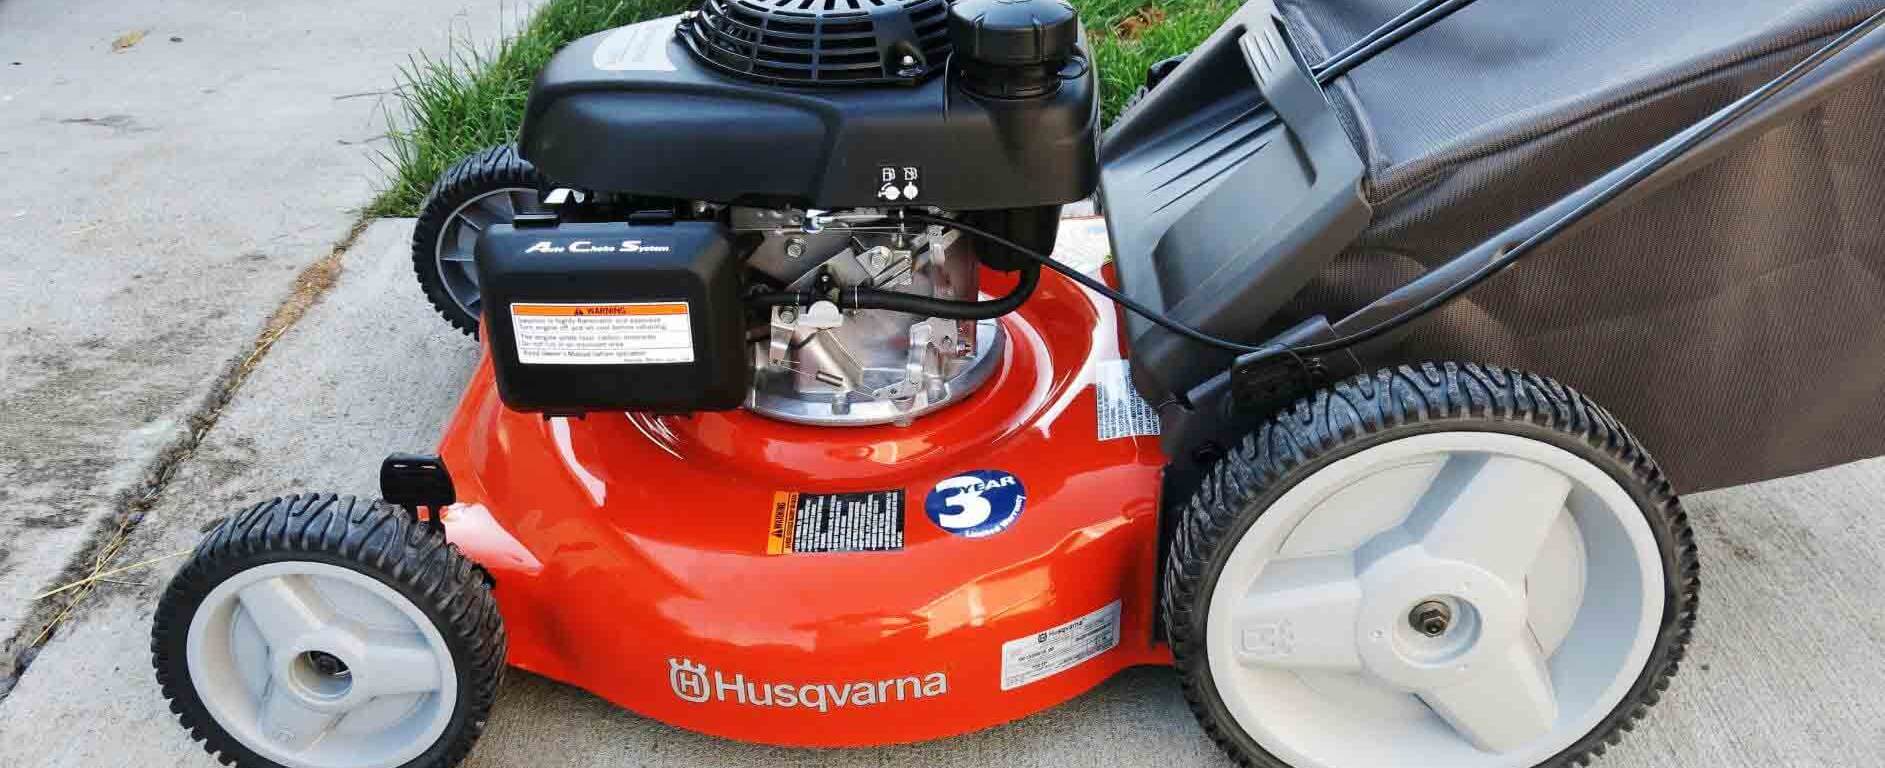 Husqvarna 7021P Review - Best Husqvarna Lawn Mower